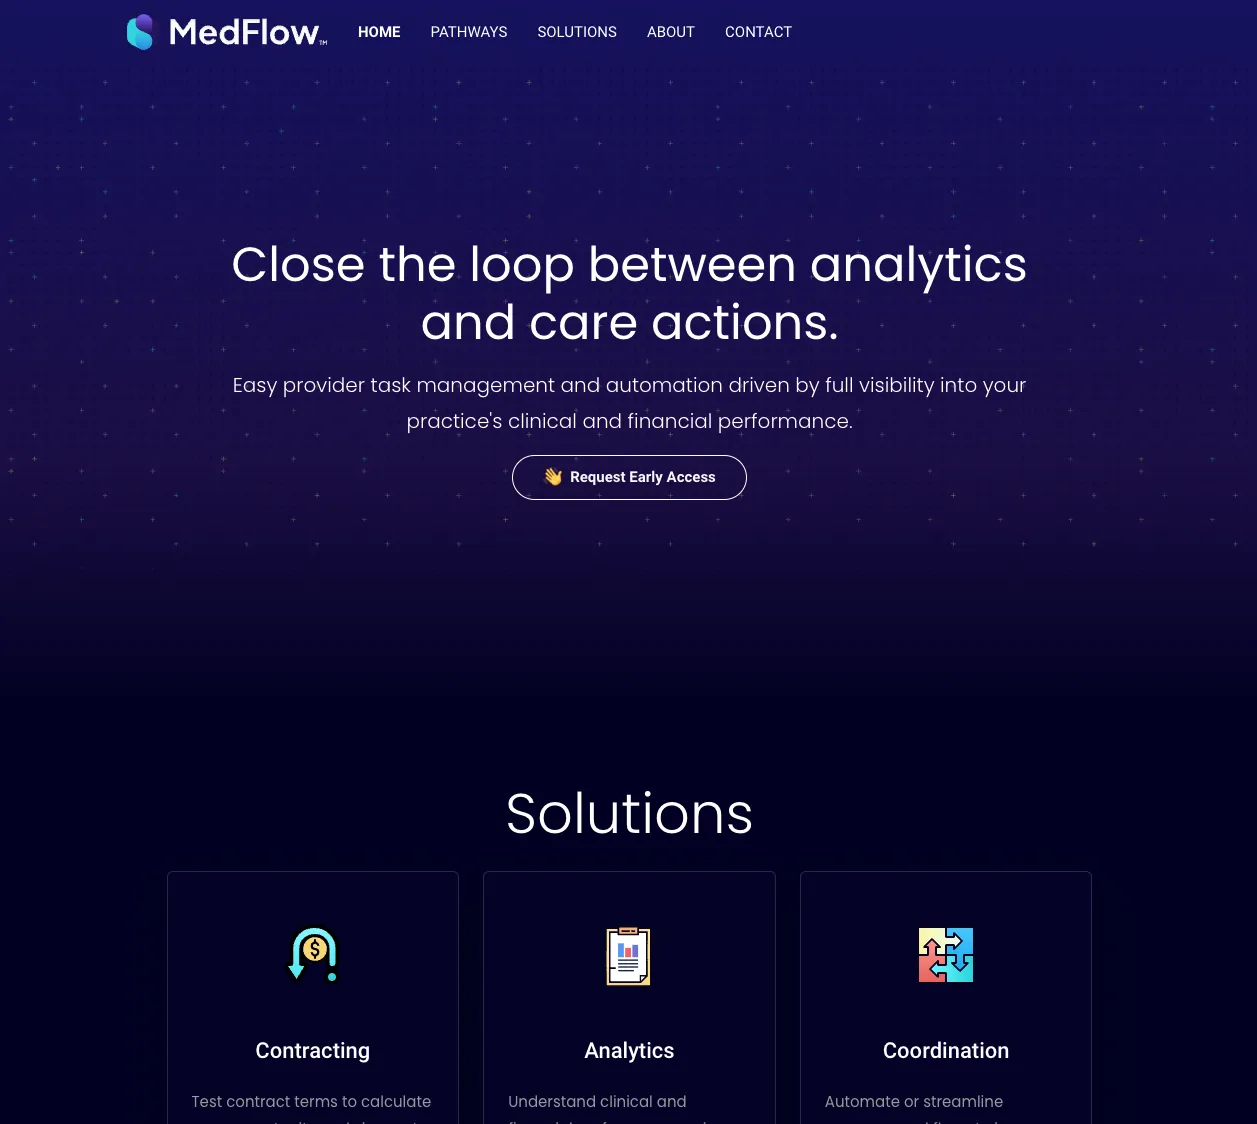 MedFlow's Website